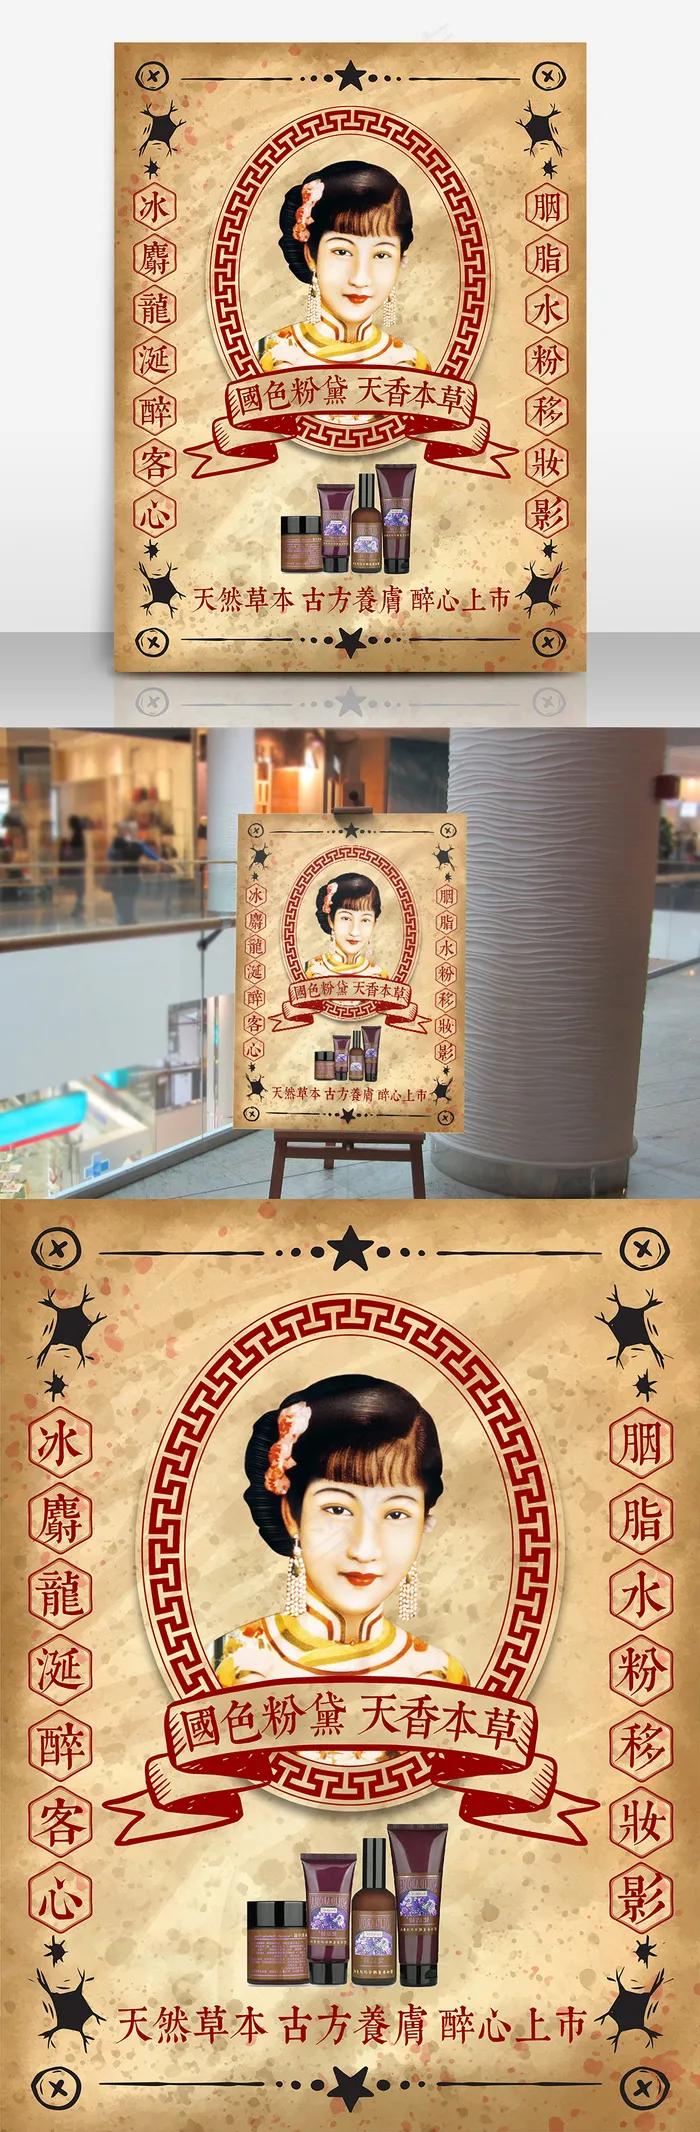 传统中国风民国风插画手绘海报设计